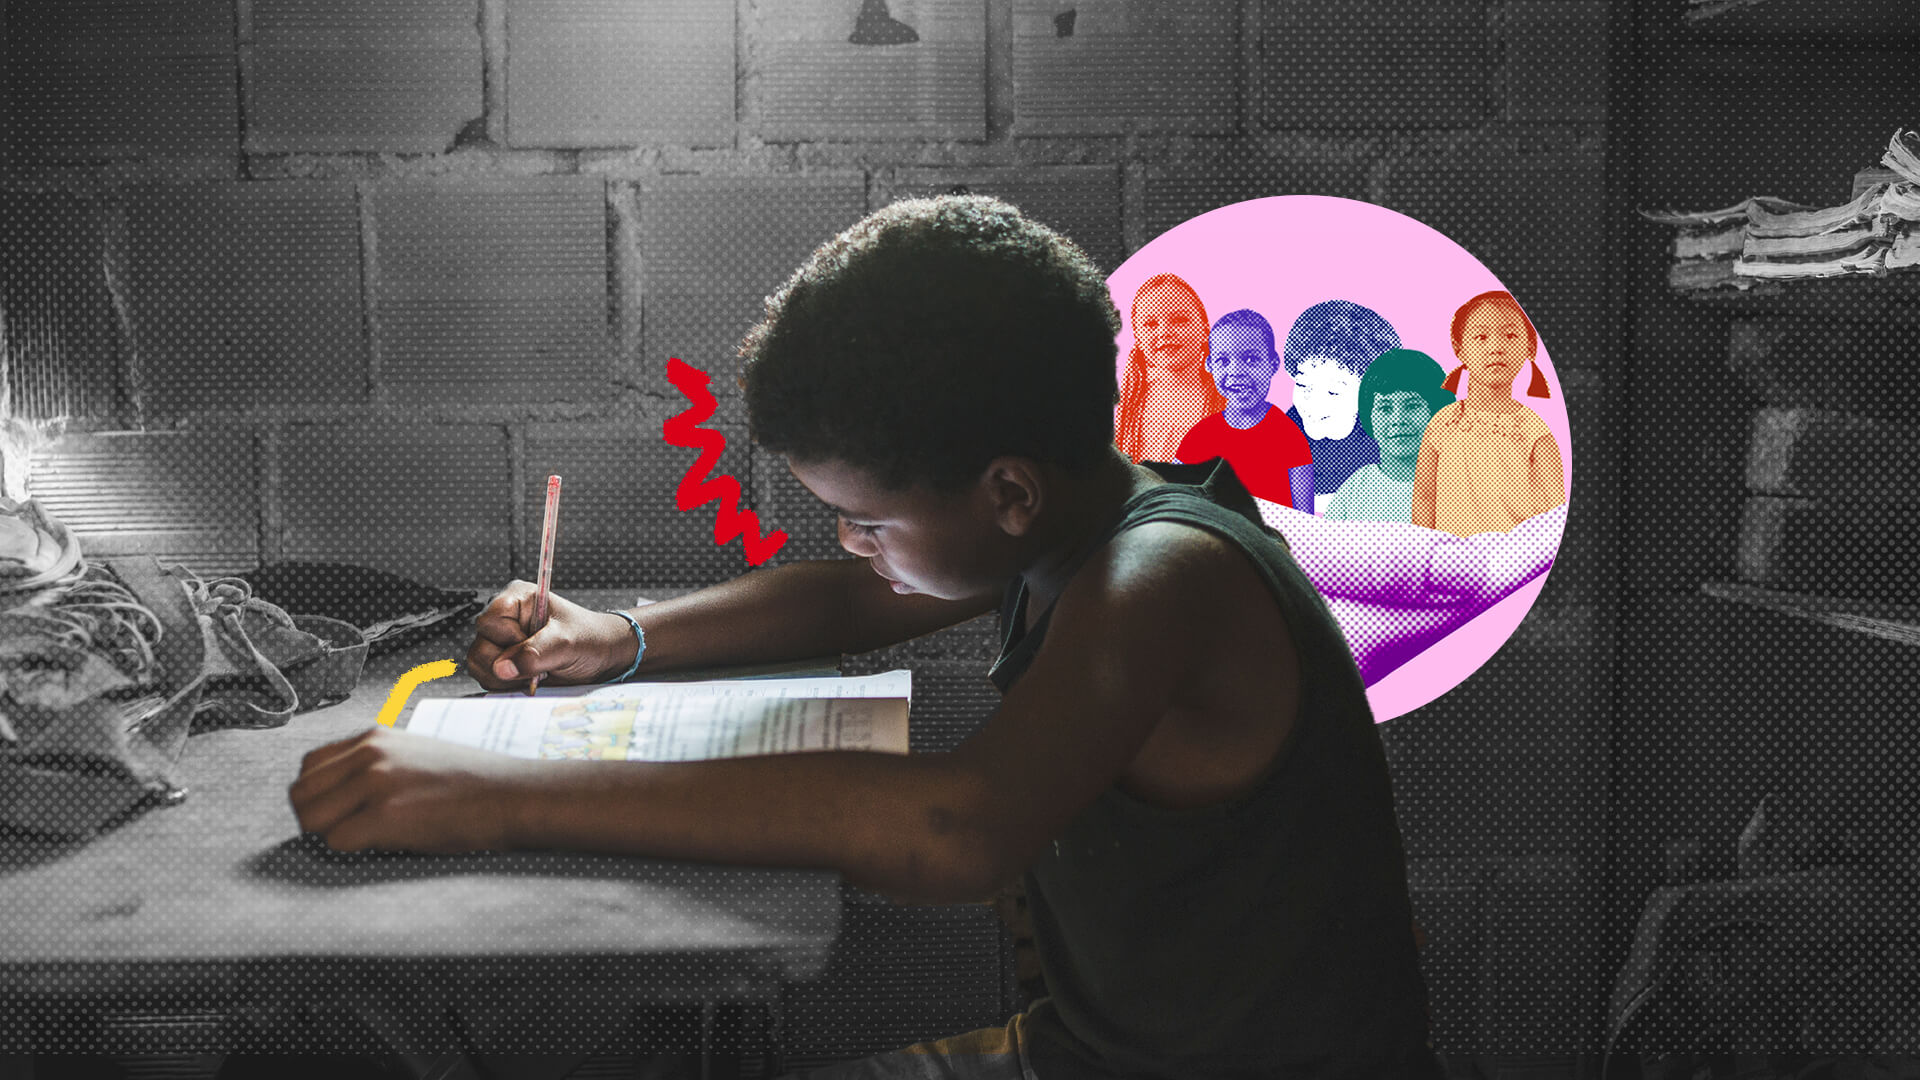 Na imagem, um menino negro aparece estudando, fazendo anotações em um livro. A imagem está em preto e branco e apenas o menino está colorido. A imagem possui intervenções de rabiscos coloridos.